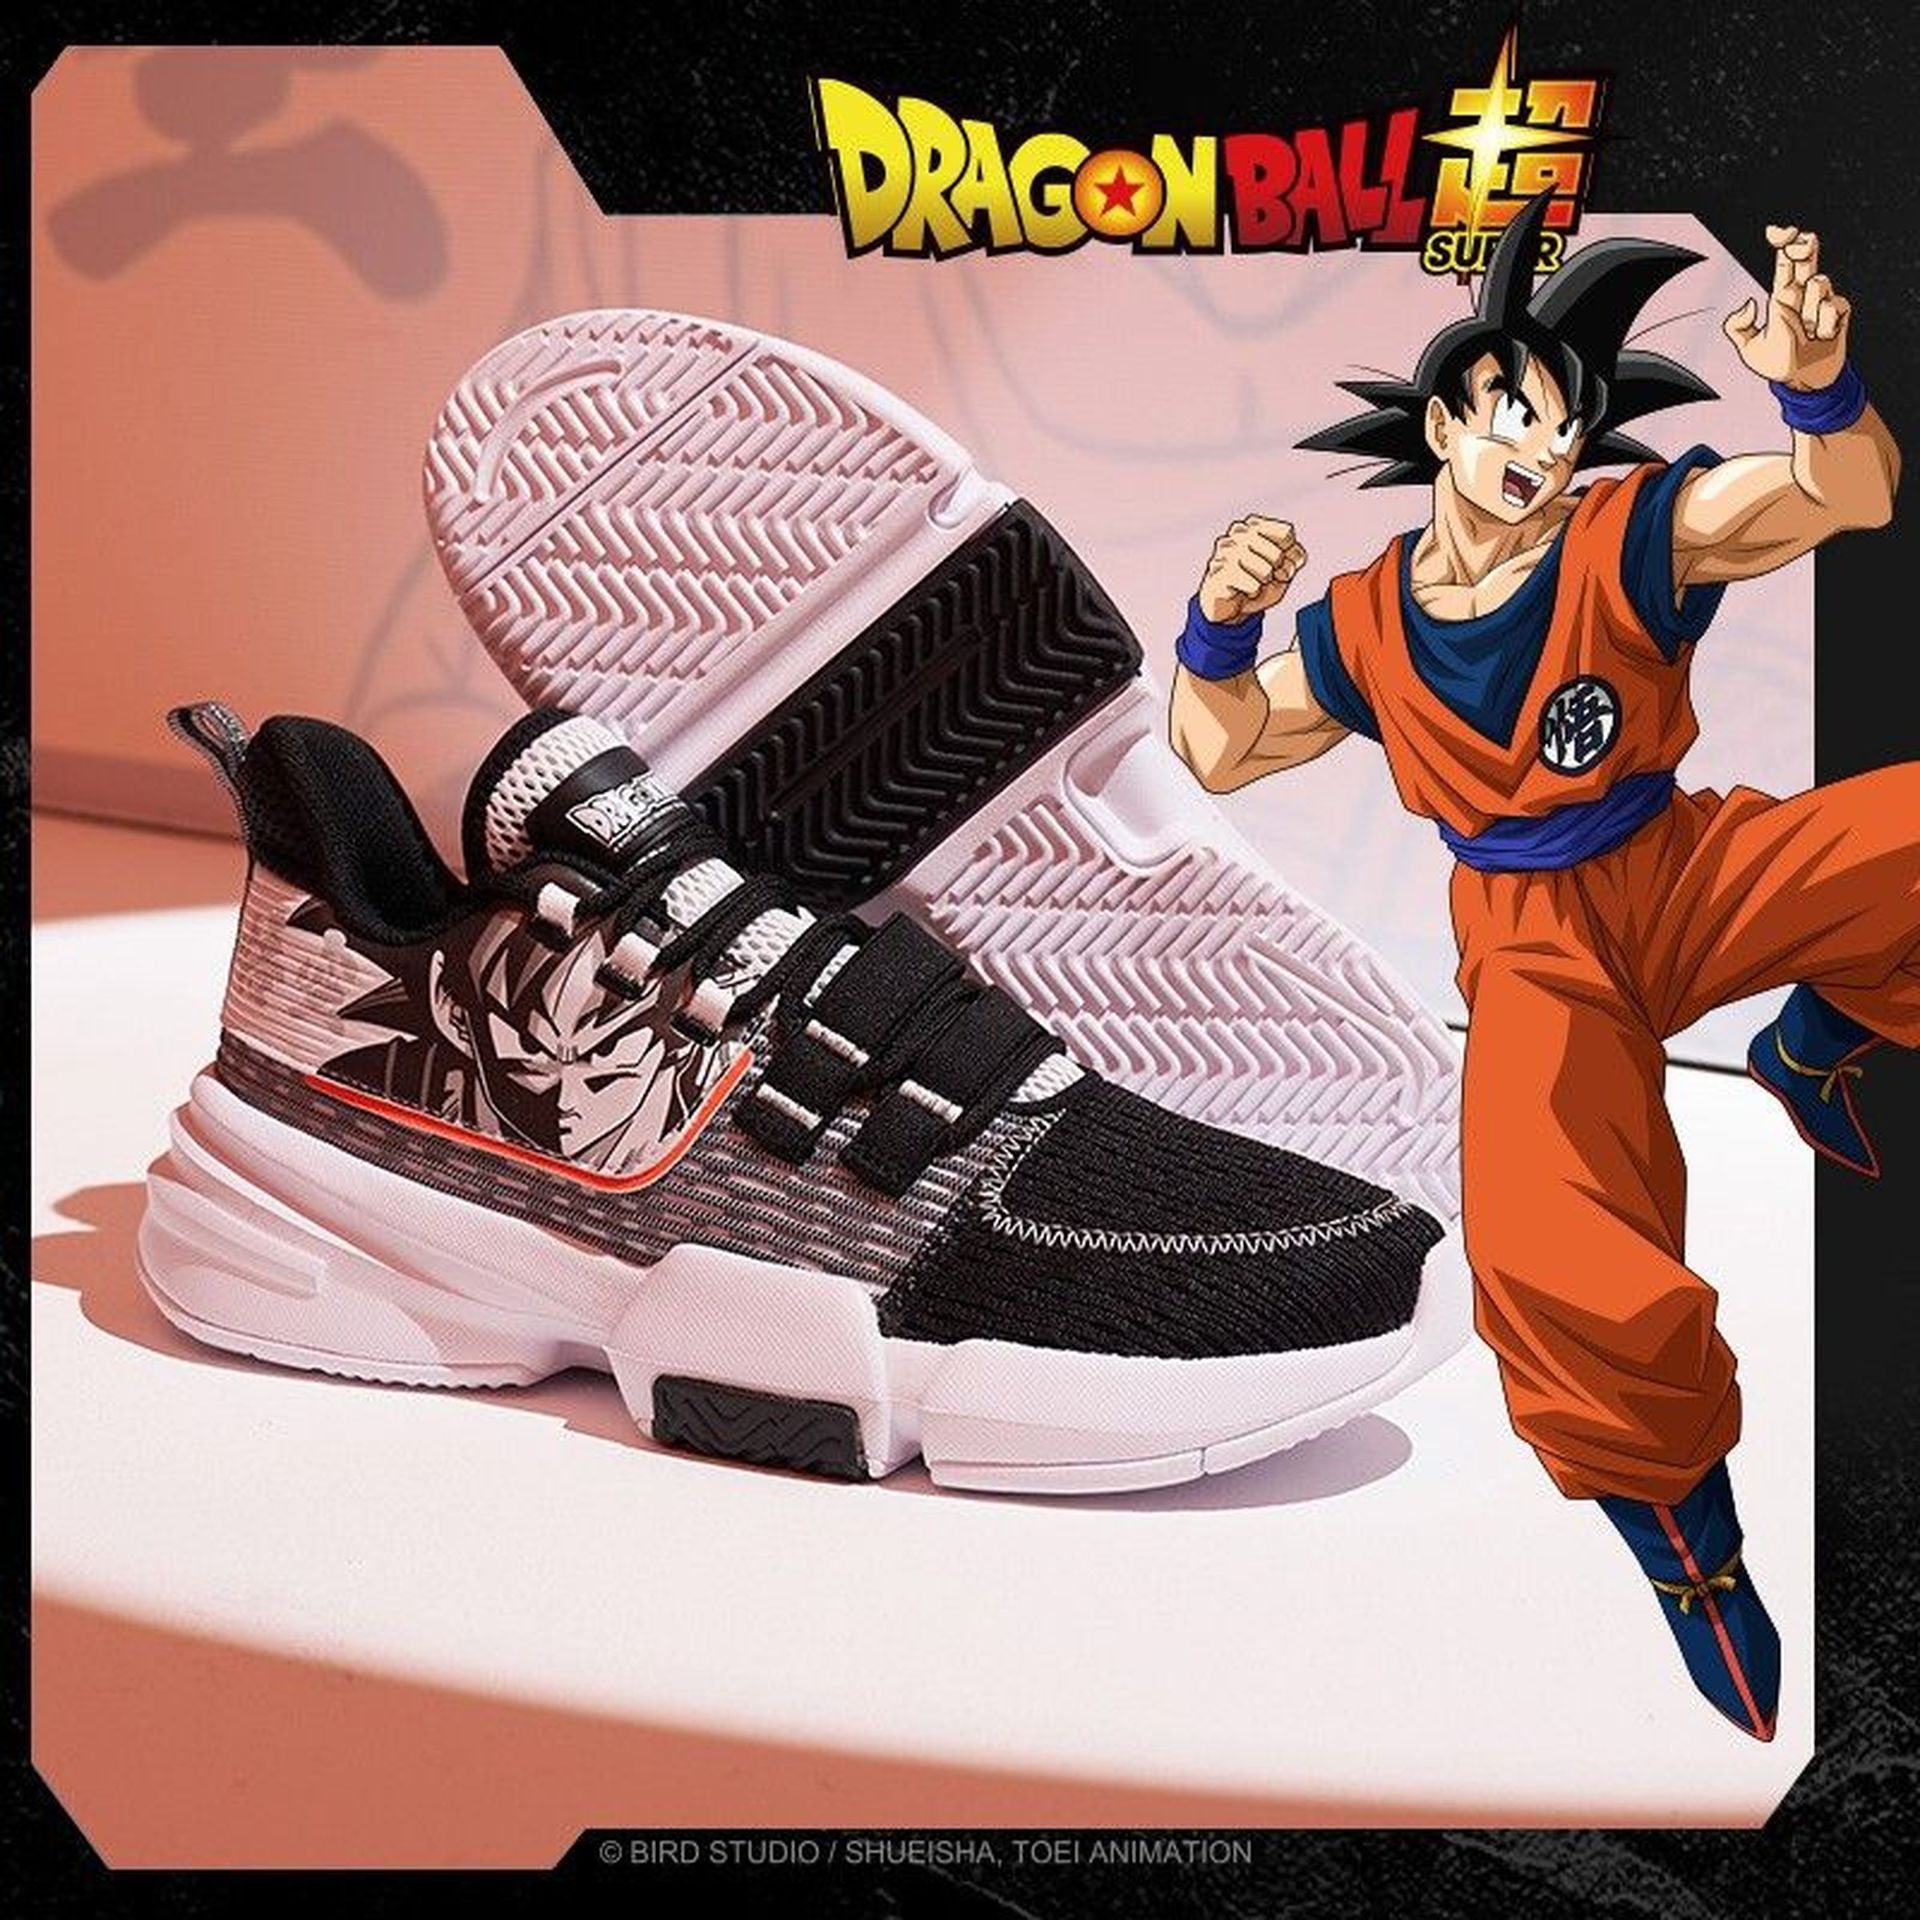 Las zapatillas de Dragon Ball Super 2020